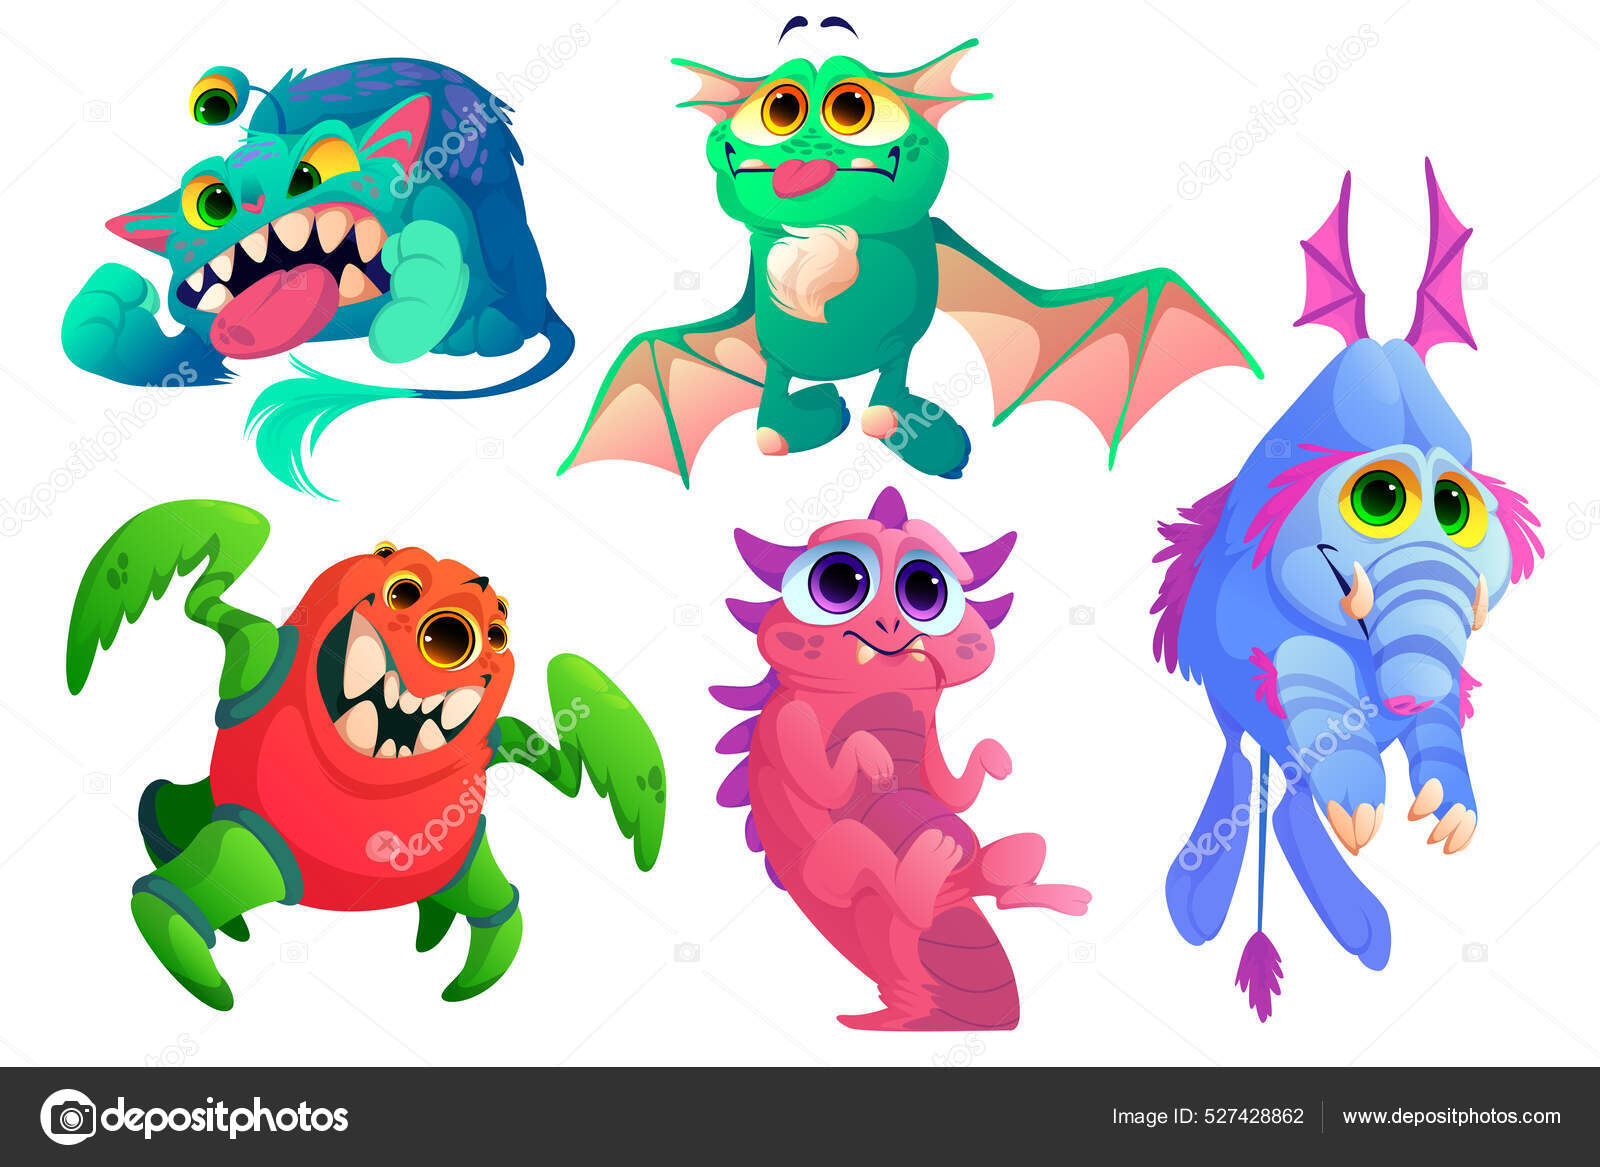 Monstros bonitos, animais alienígenas engraçados imagem vetorial